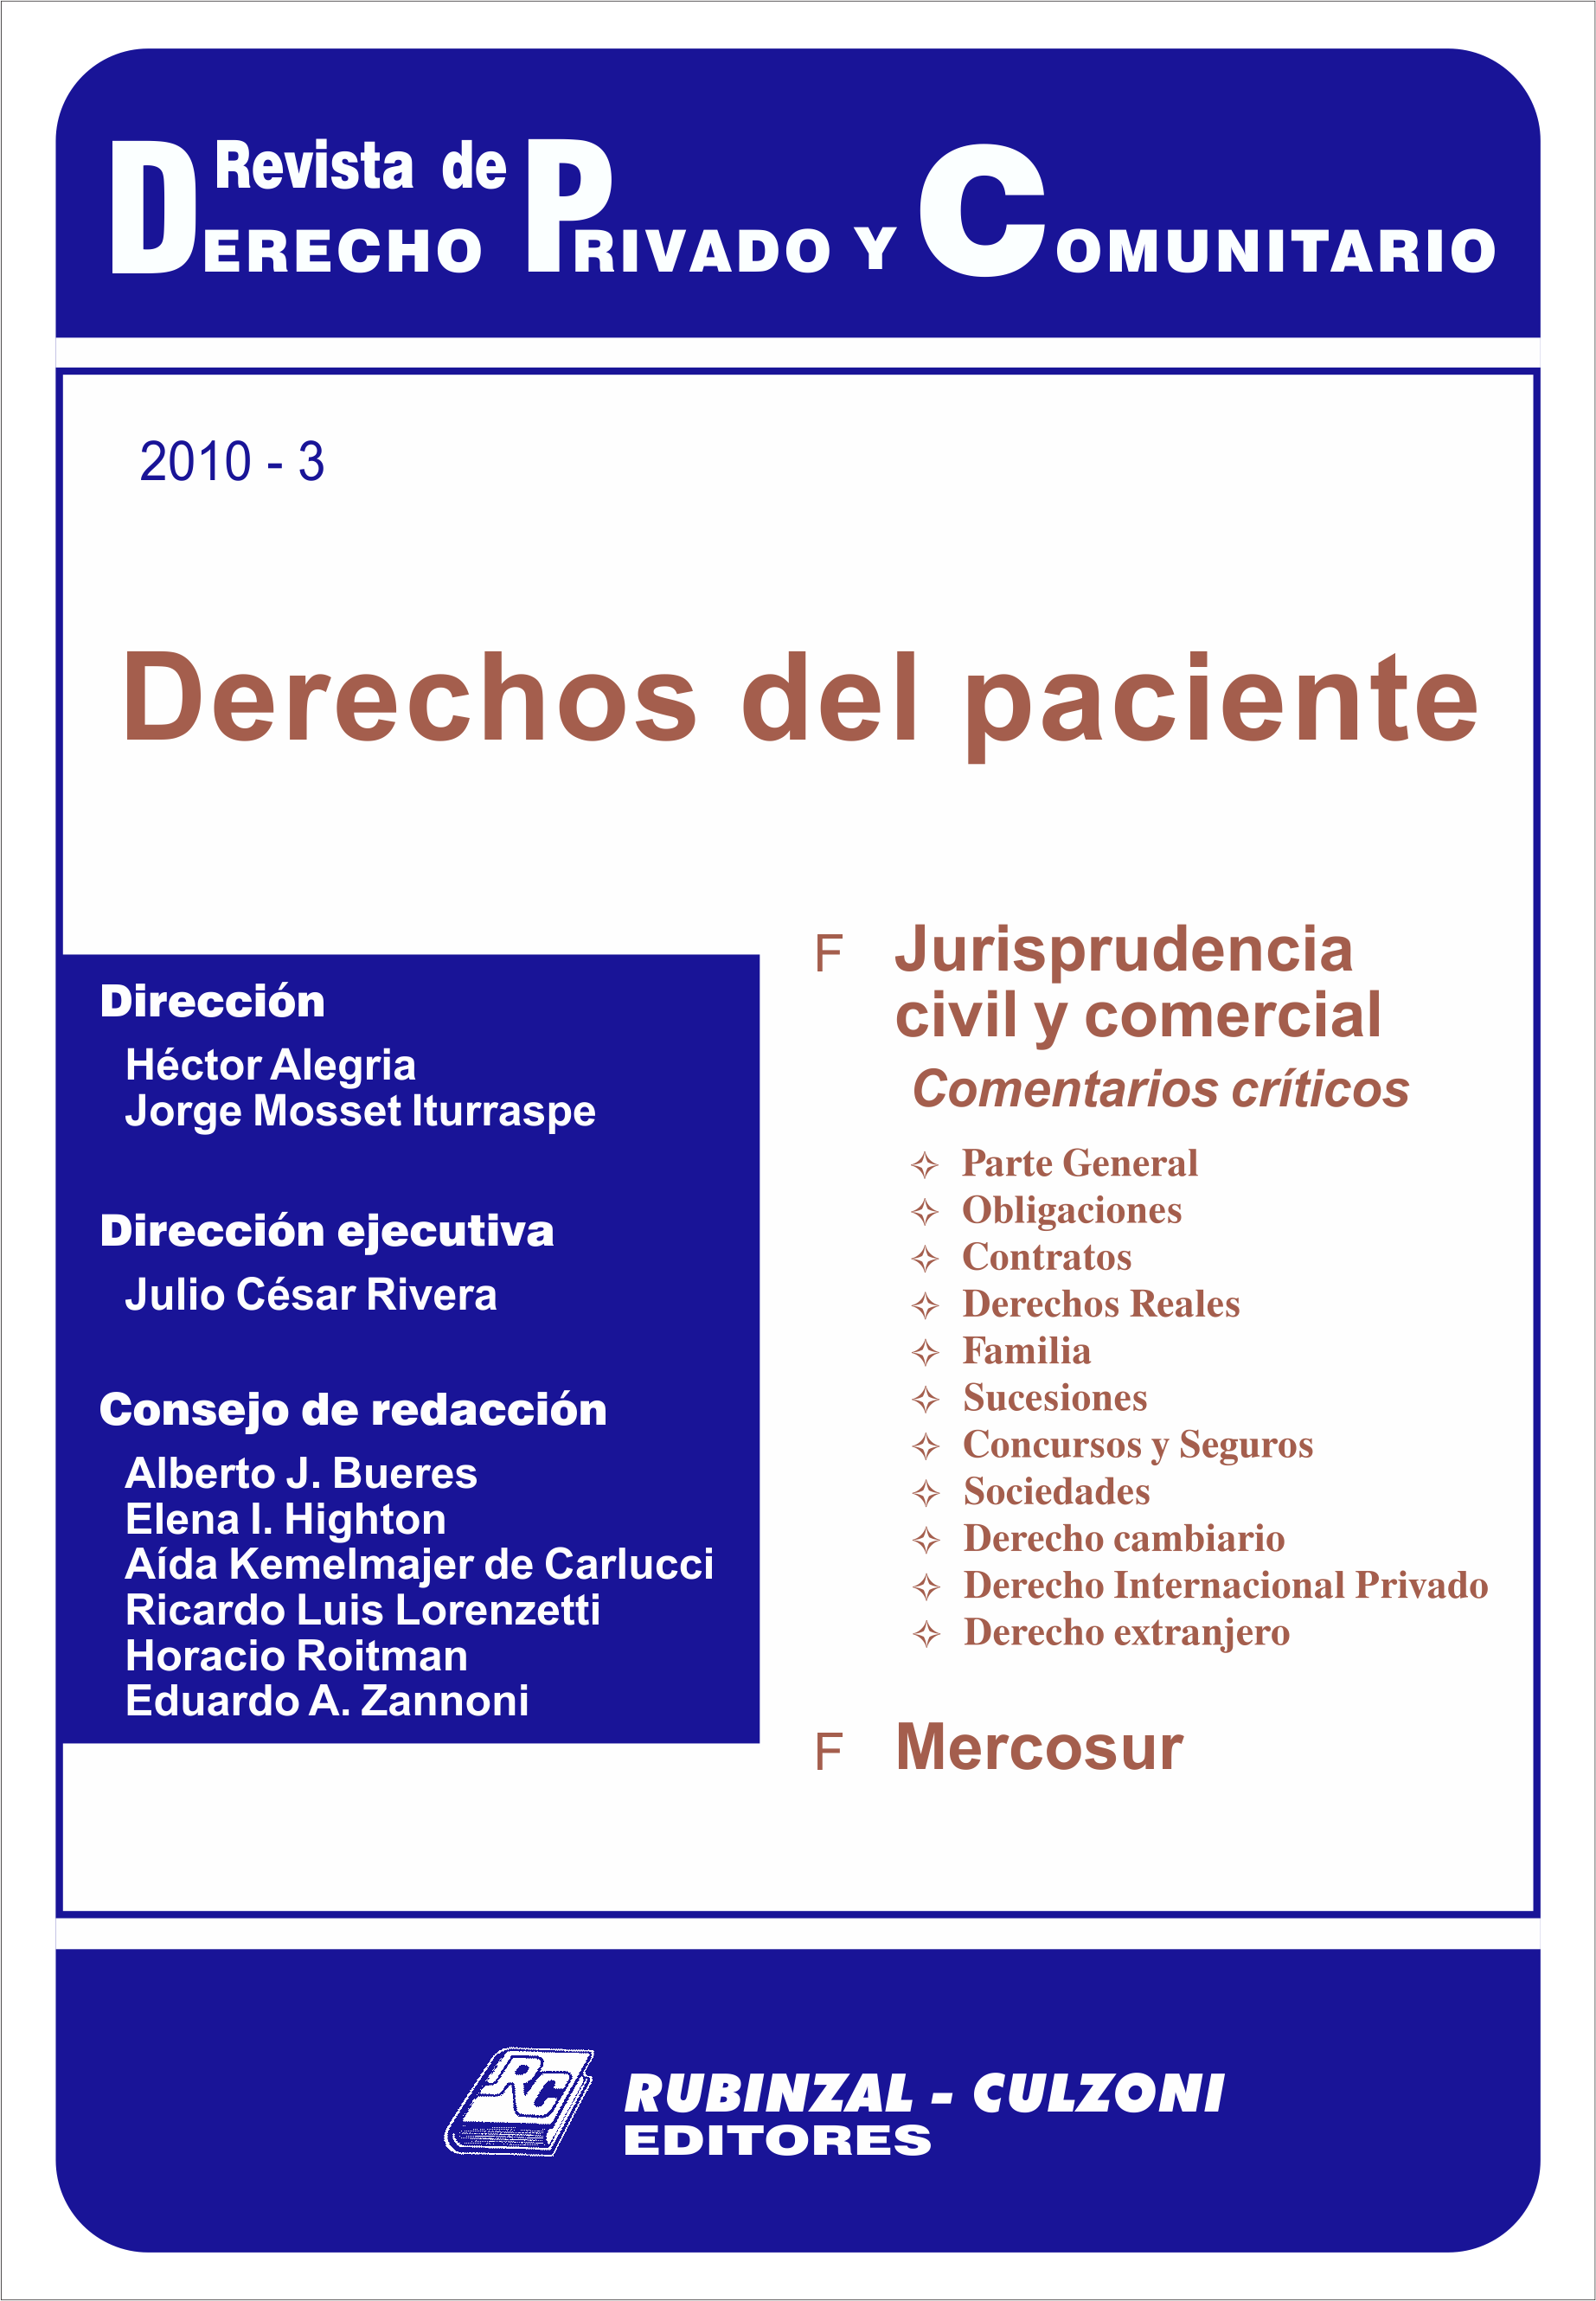 Revista de Derecho Privado y Comunitario - Derechos del paciente.